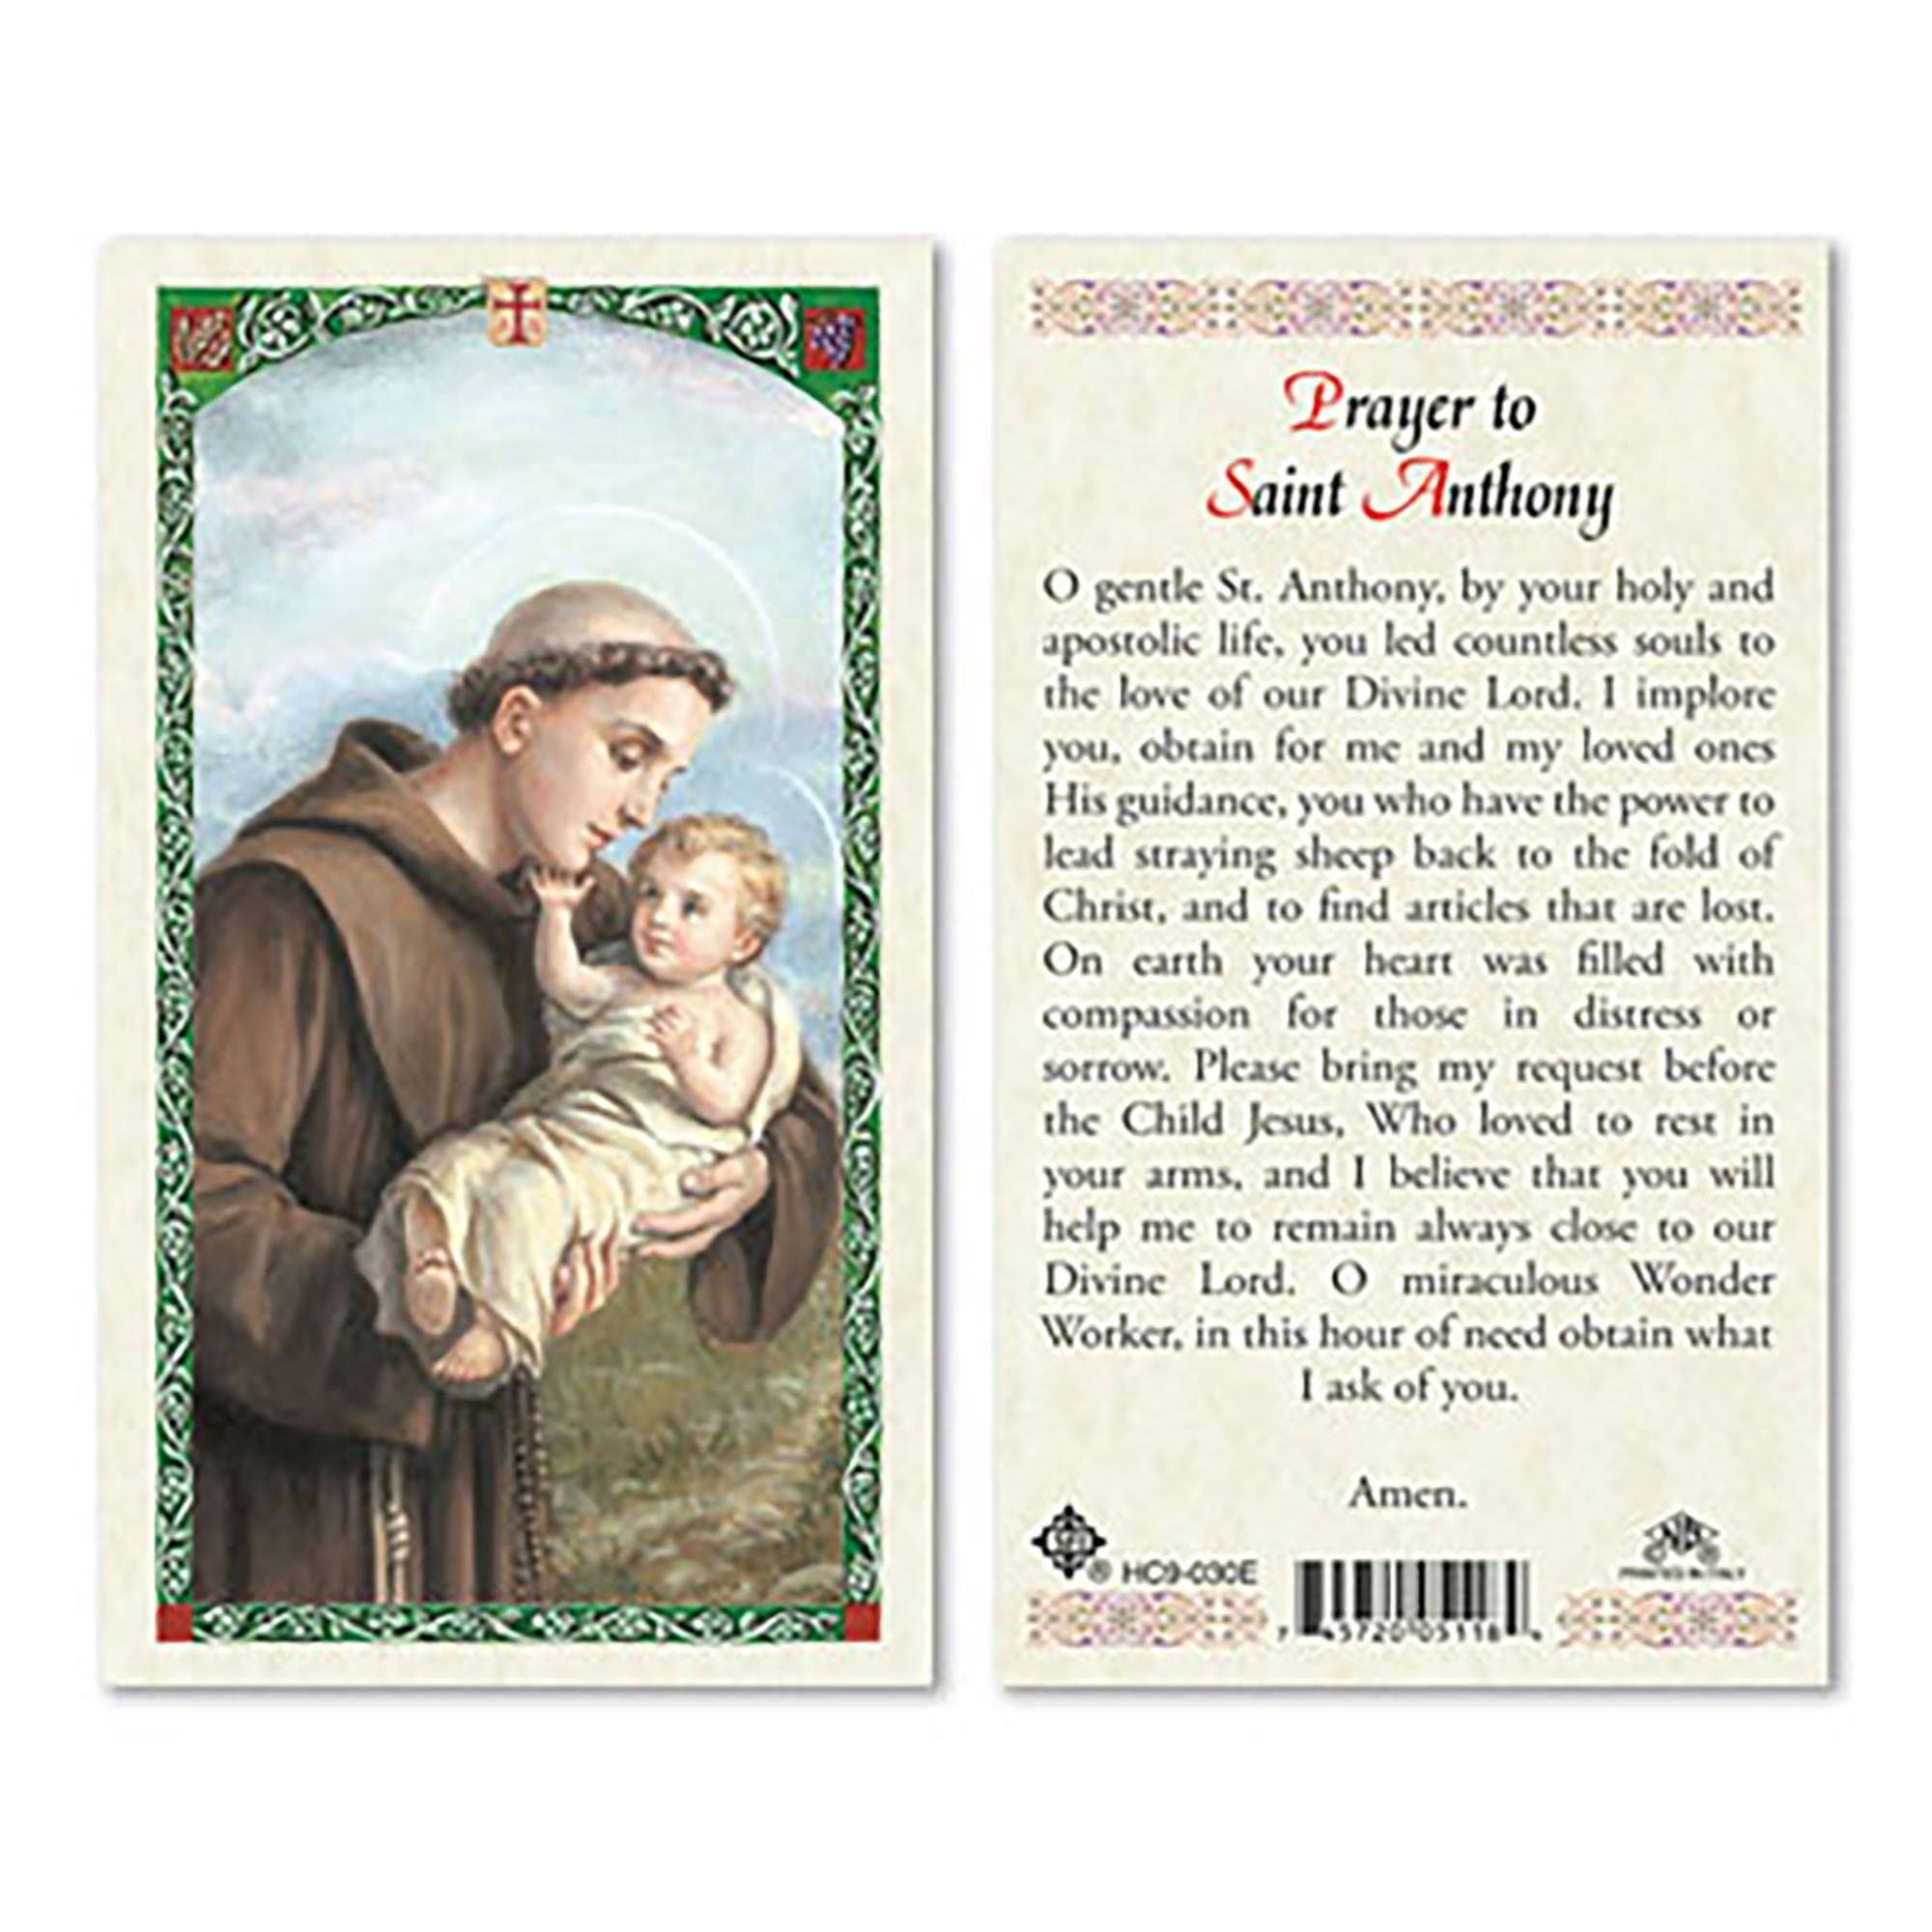 Prayer to Saint Anthony Holy Card - Laminated